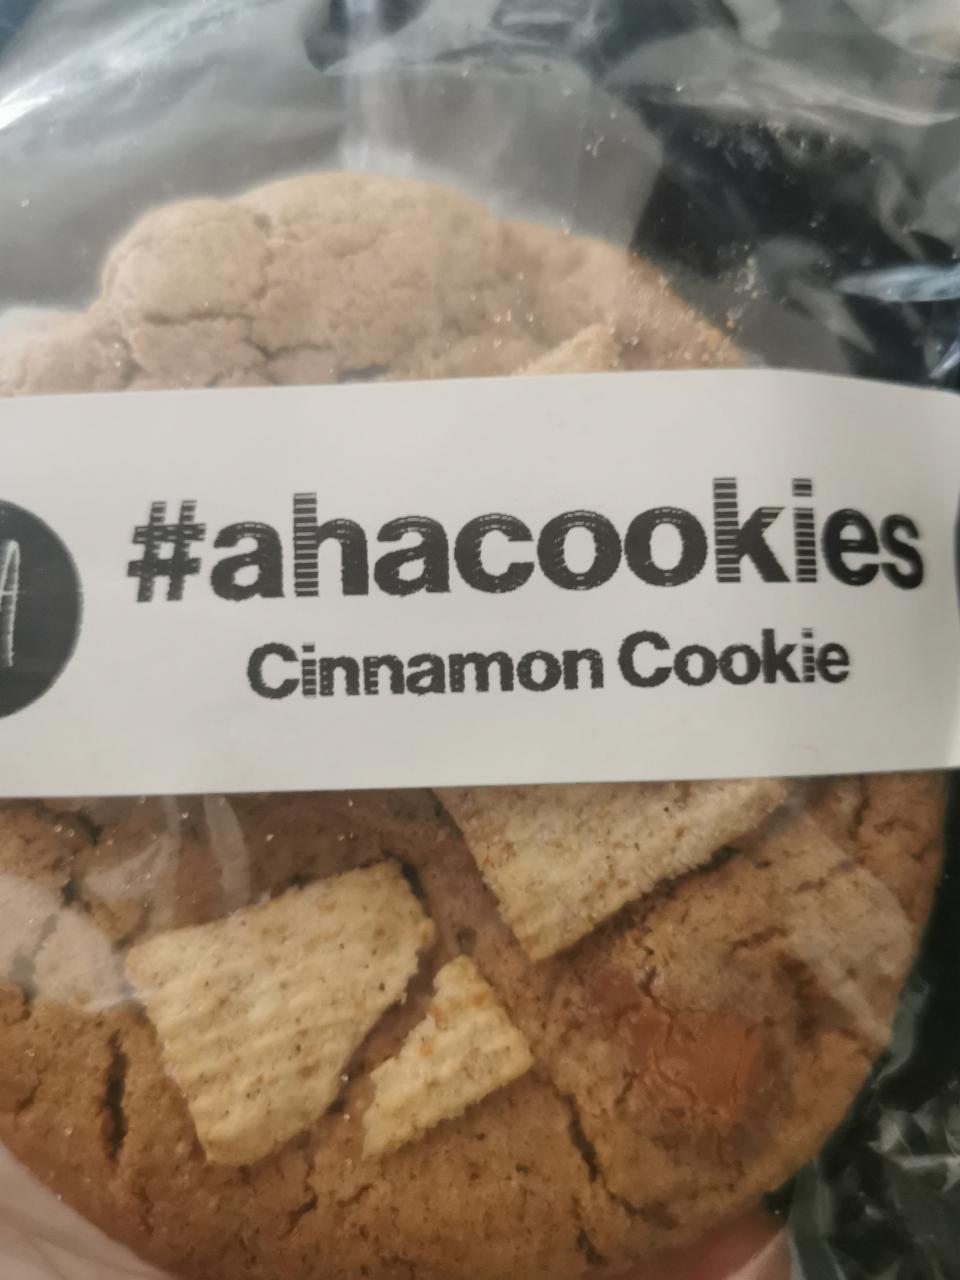 Fotografie - Cinnamon Cookie ahacookies